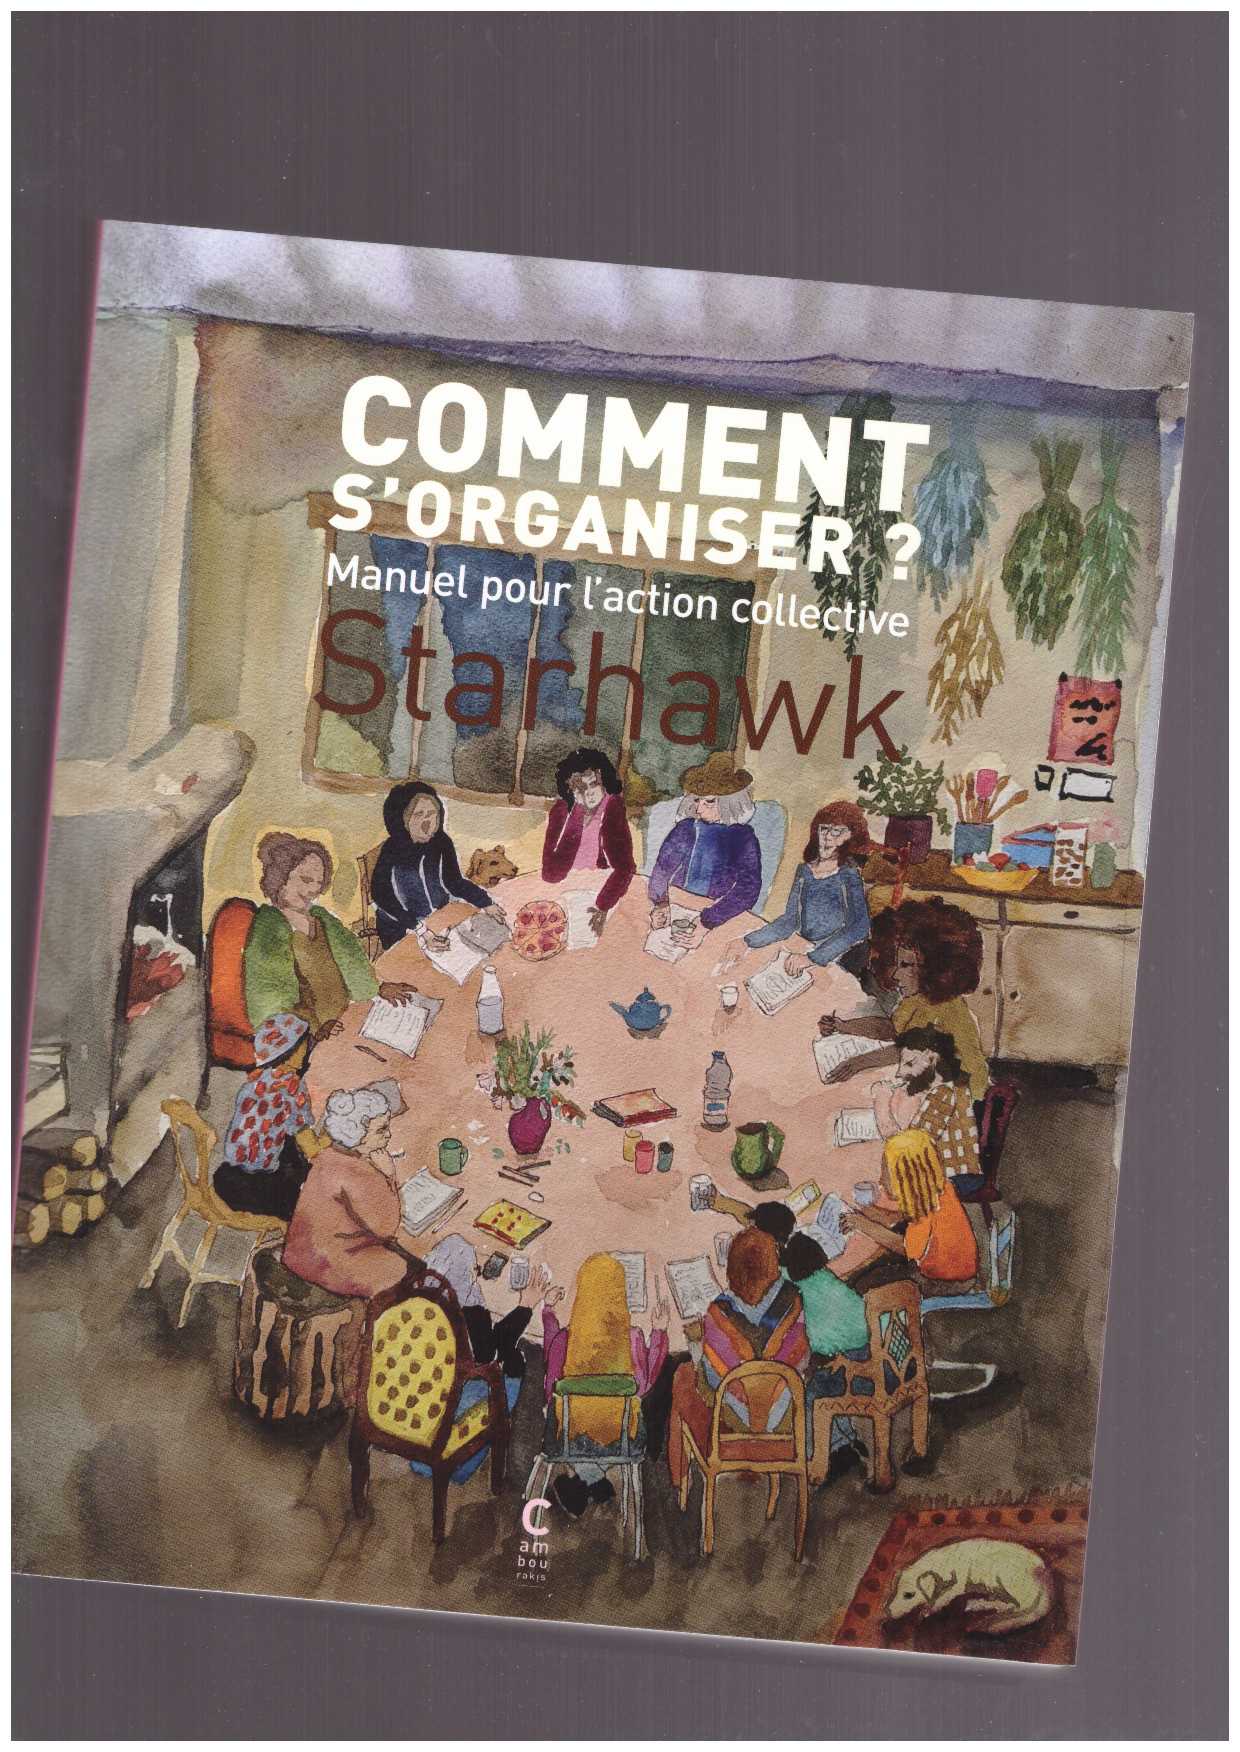 STARHAWK - Comment s’organiser ? Manuel pour l’action collective